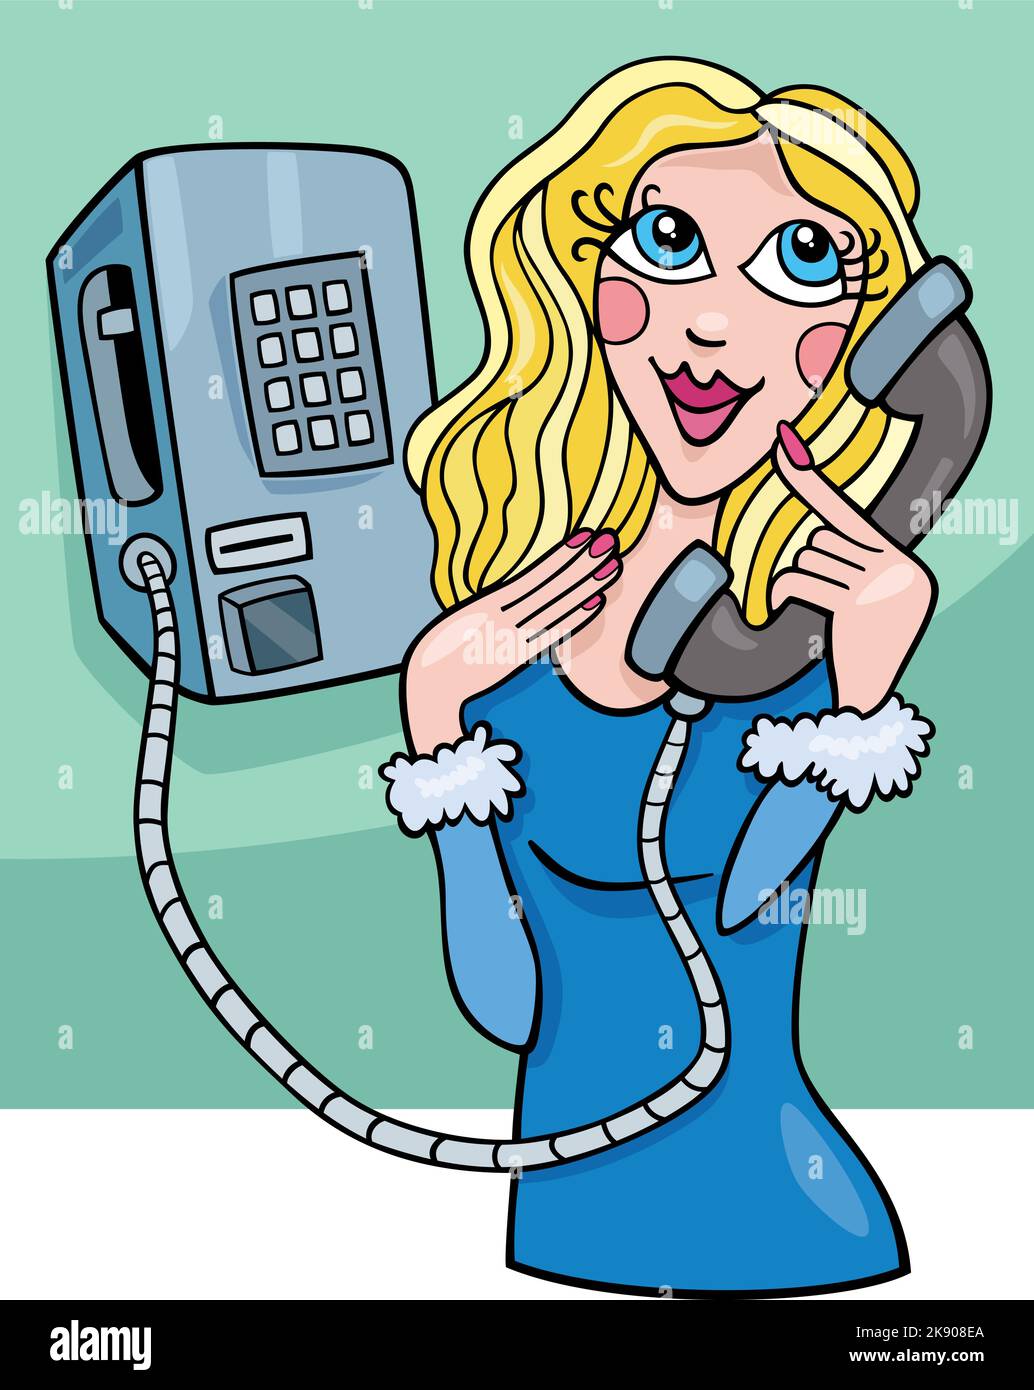 Ilustración de dibujos animados de una joven mujer personaje cómico hablando en un viejo teléfono público Ilustración del Vector